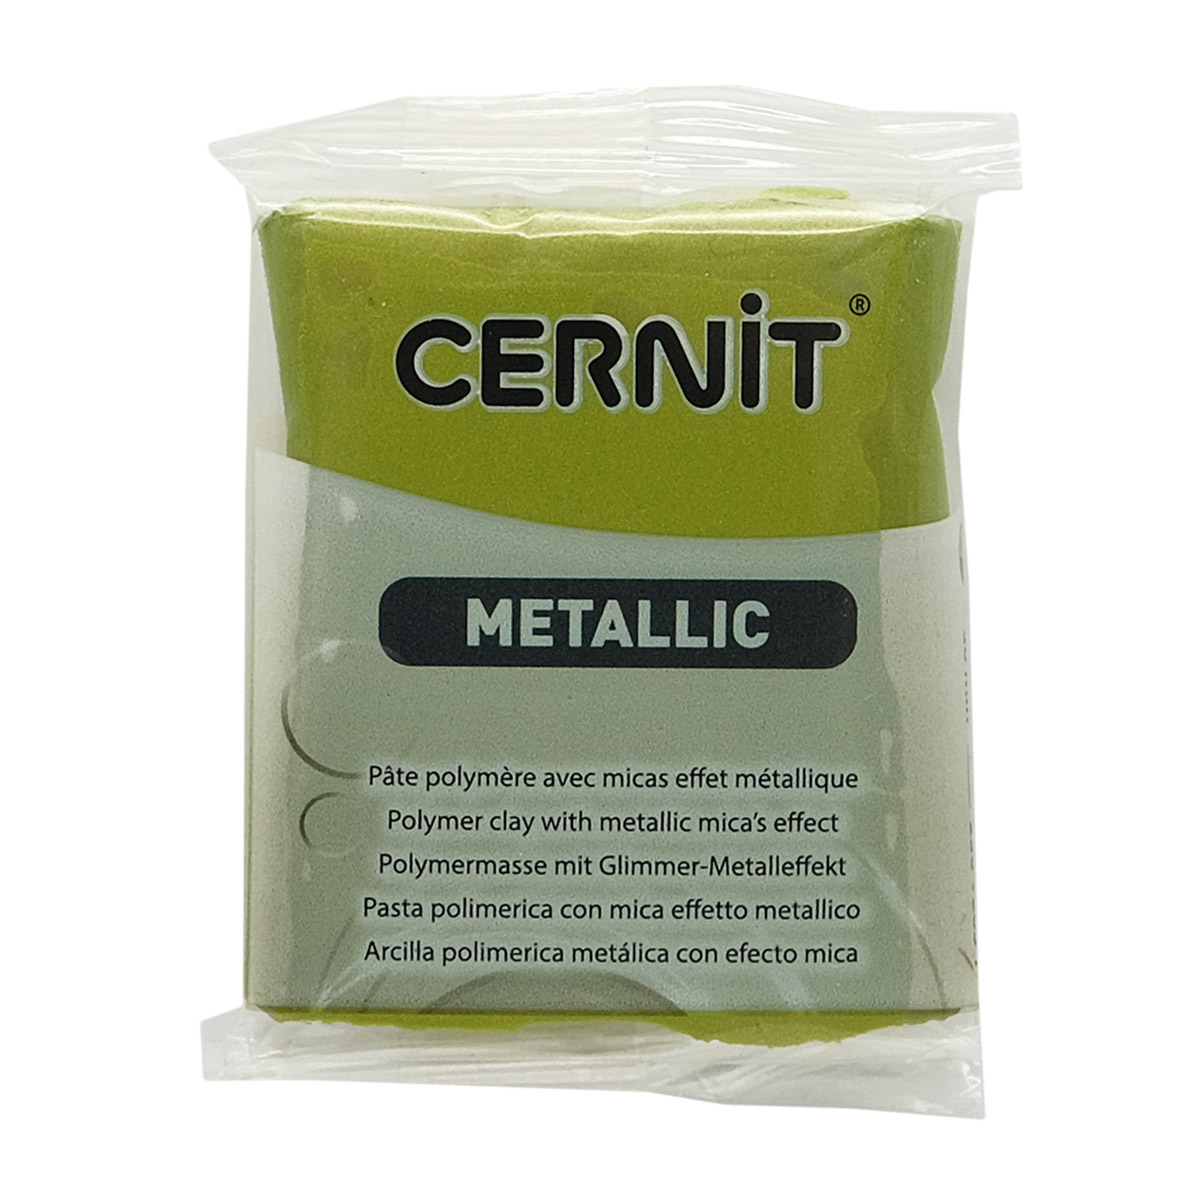 CE0870056 Пластика полимерная запекаемая Cernit METALLIC, 56 г